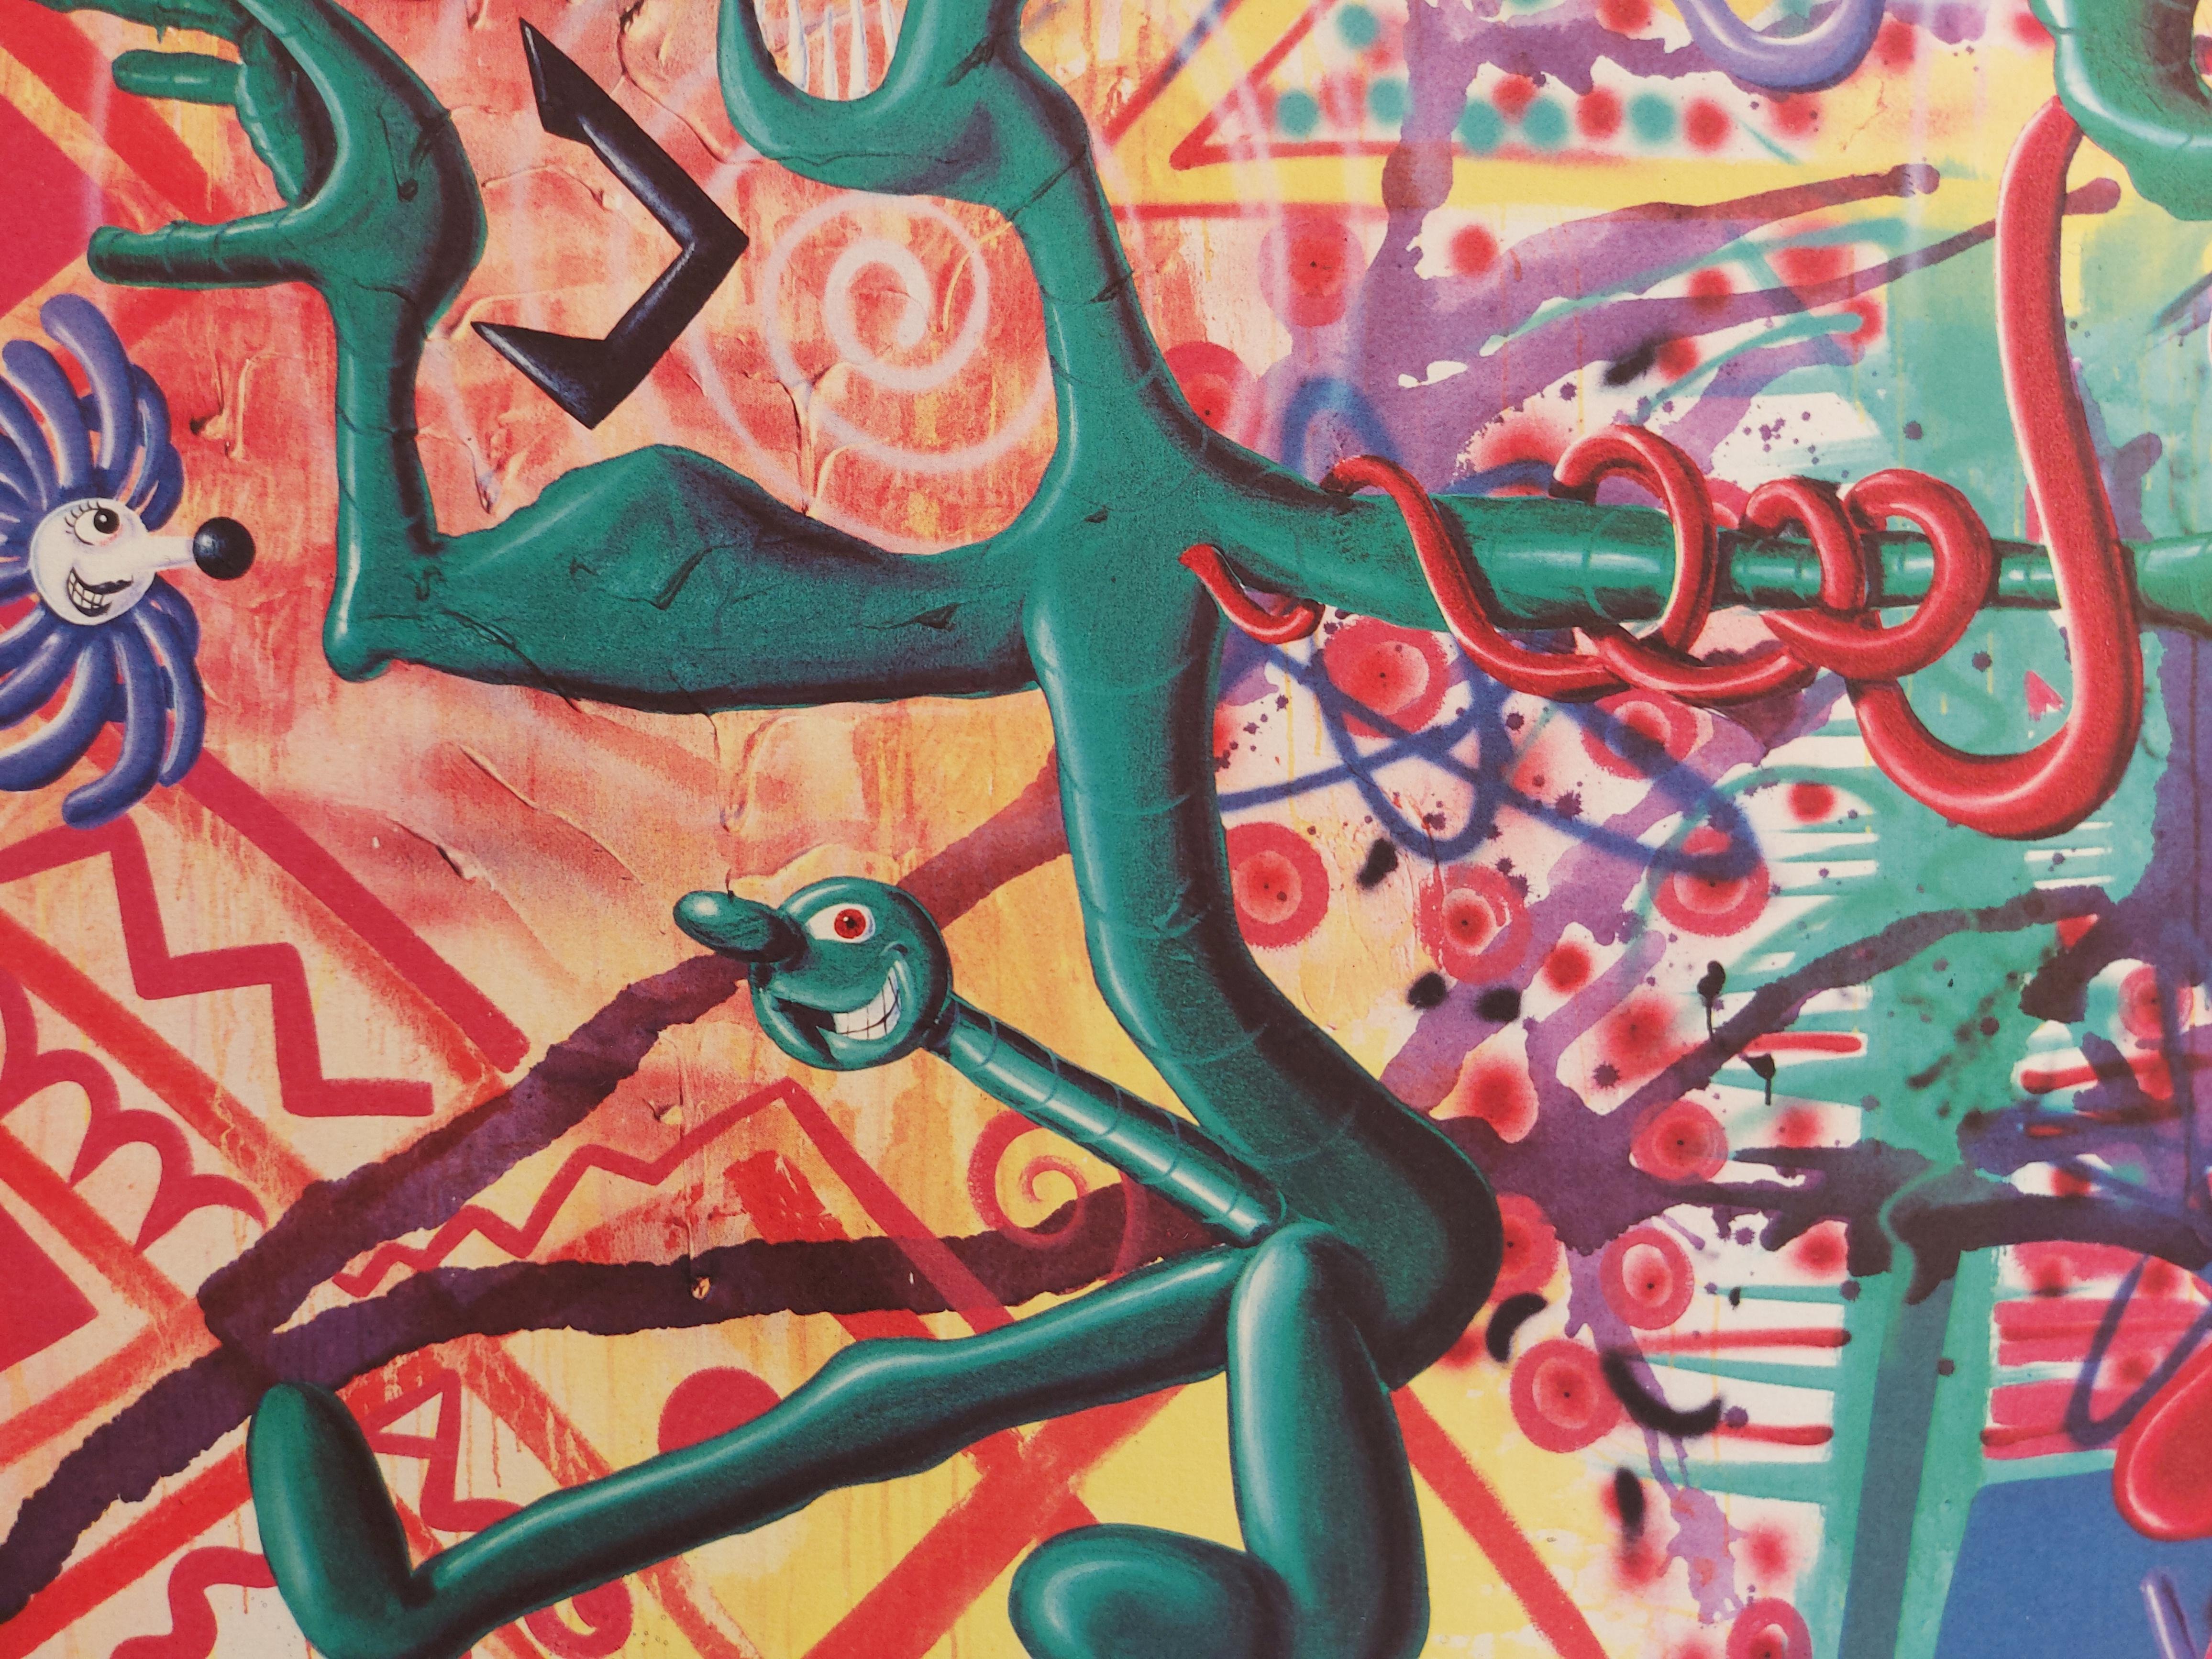 Kenny Scharf
Ratfinkbonerthunk : Rat surréaliste, 1990

Giclée originale
Signé à la main au crayon
Sur vélin d'Arches 56 x 76 cm (c. 22 x 30 in)
Publié par les Editions Vermorel en 1990

Excellent état